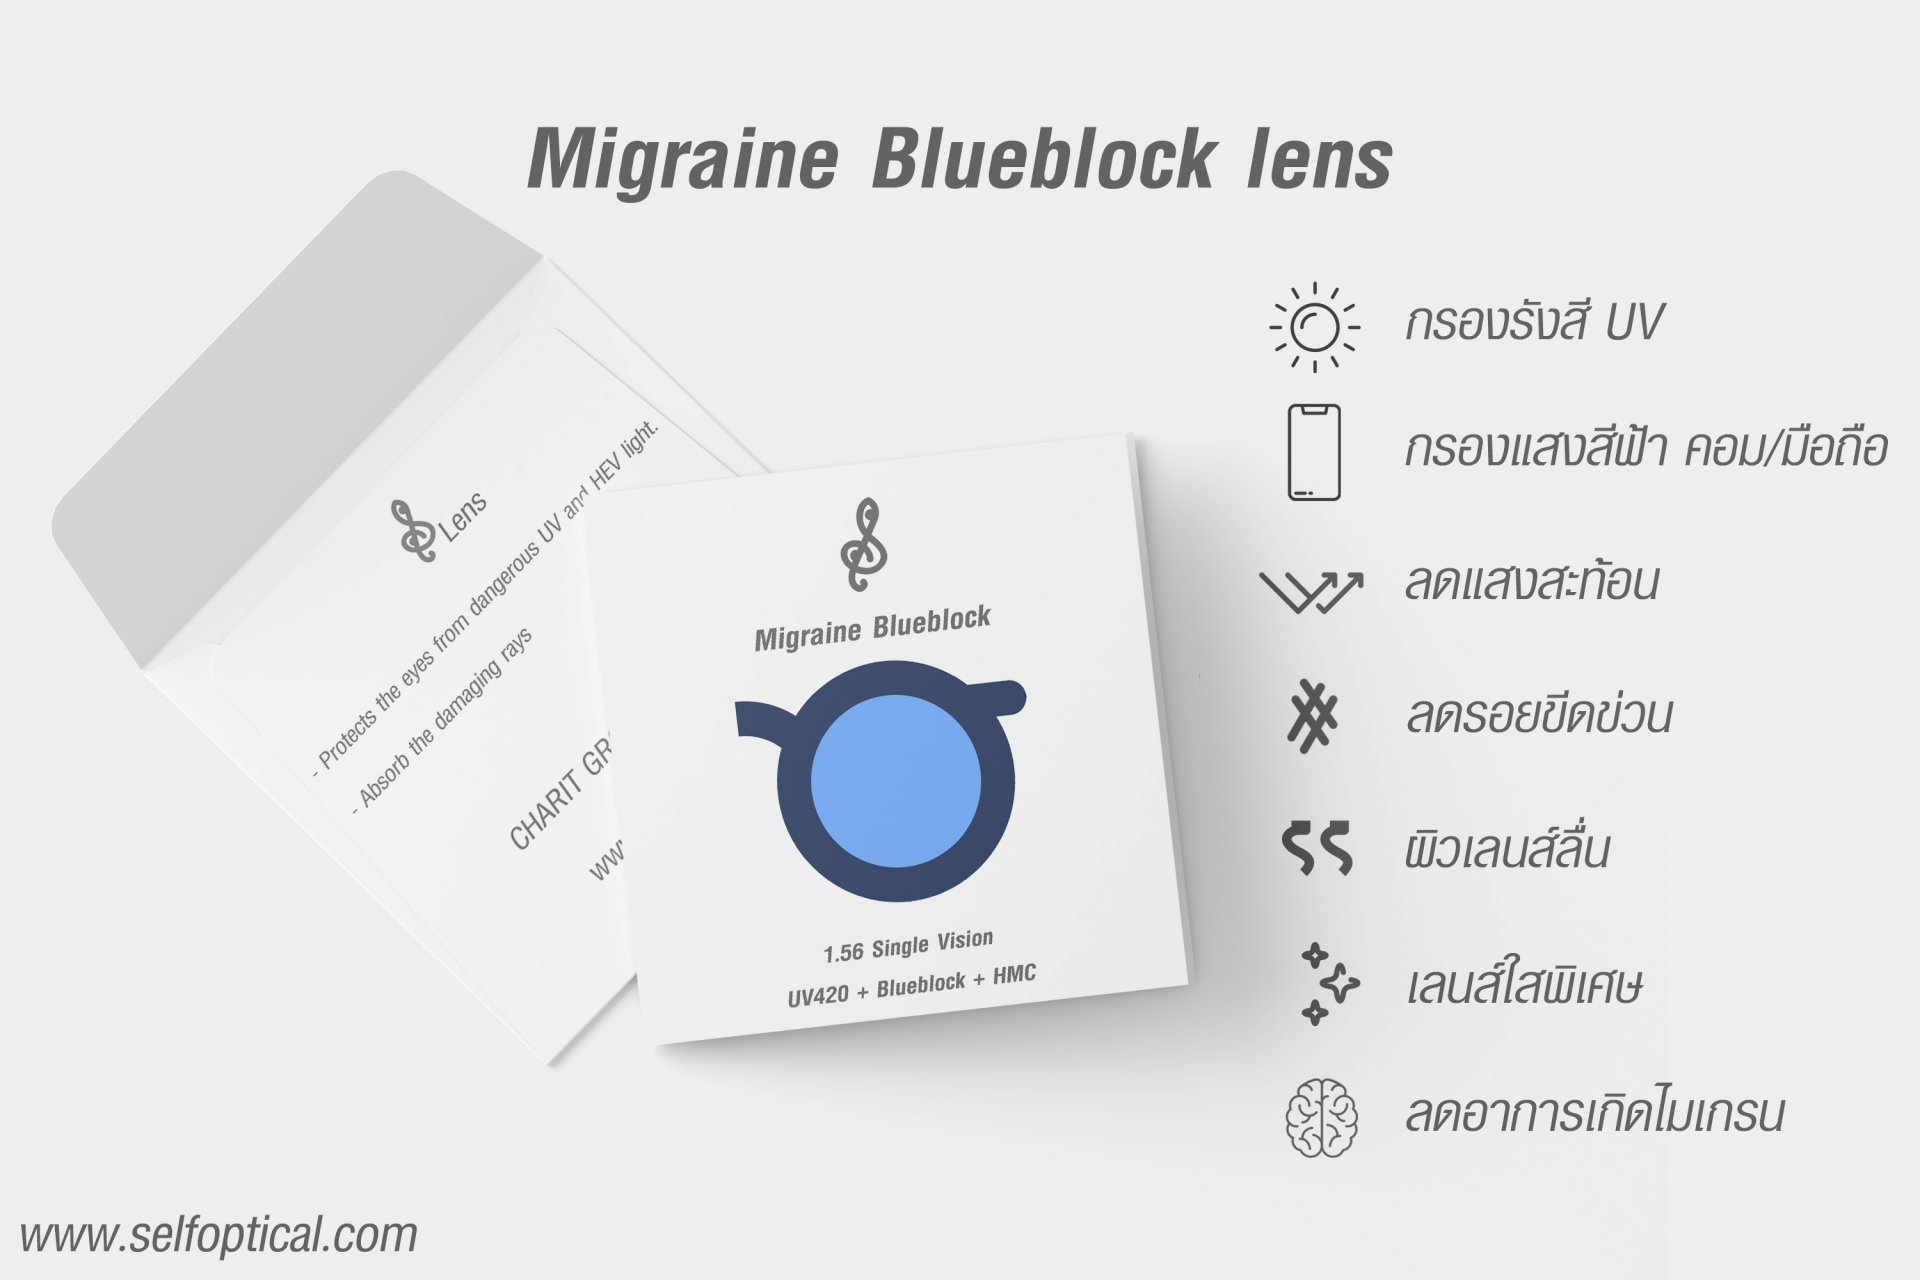 Migraine Blueblock Lens